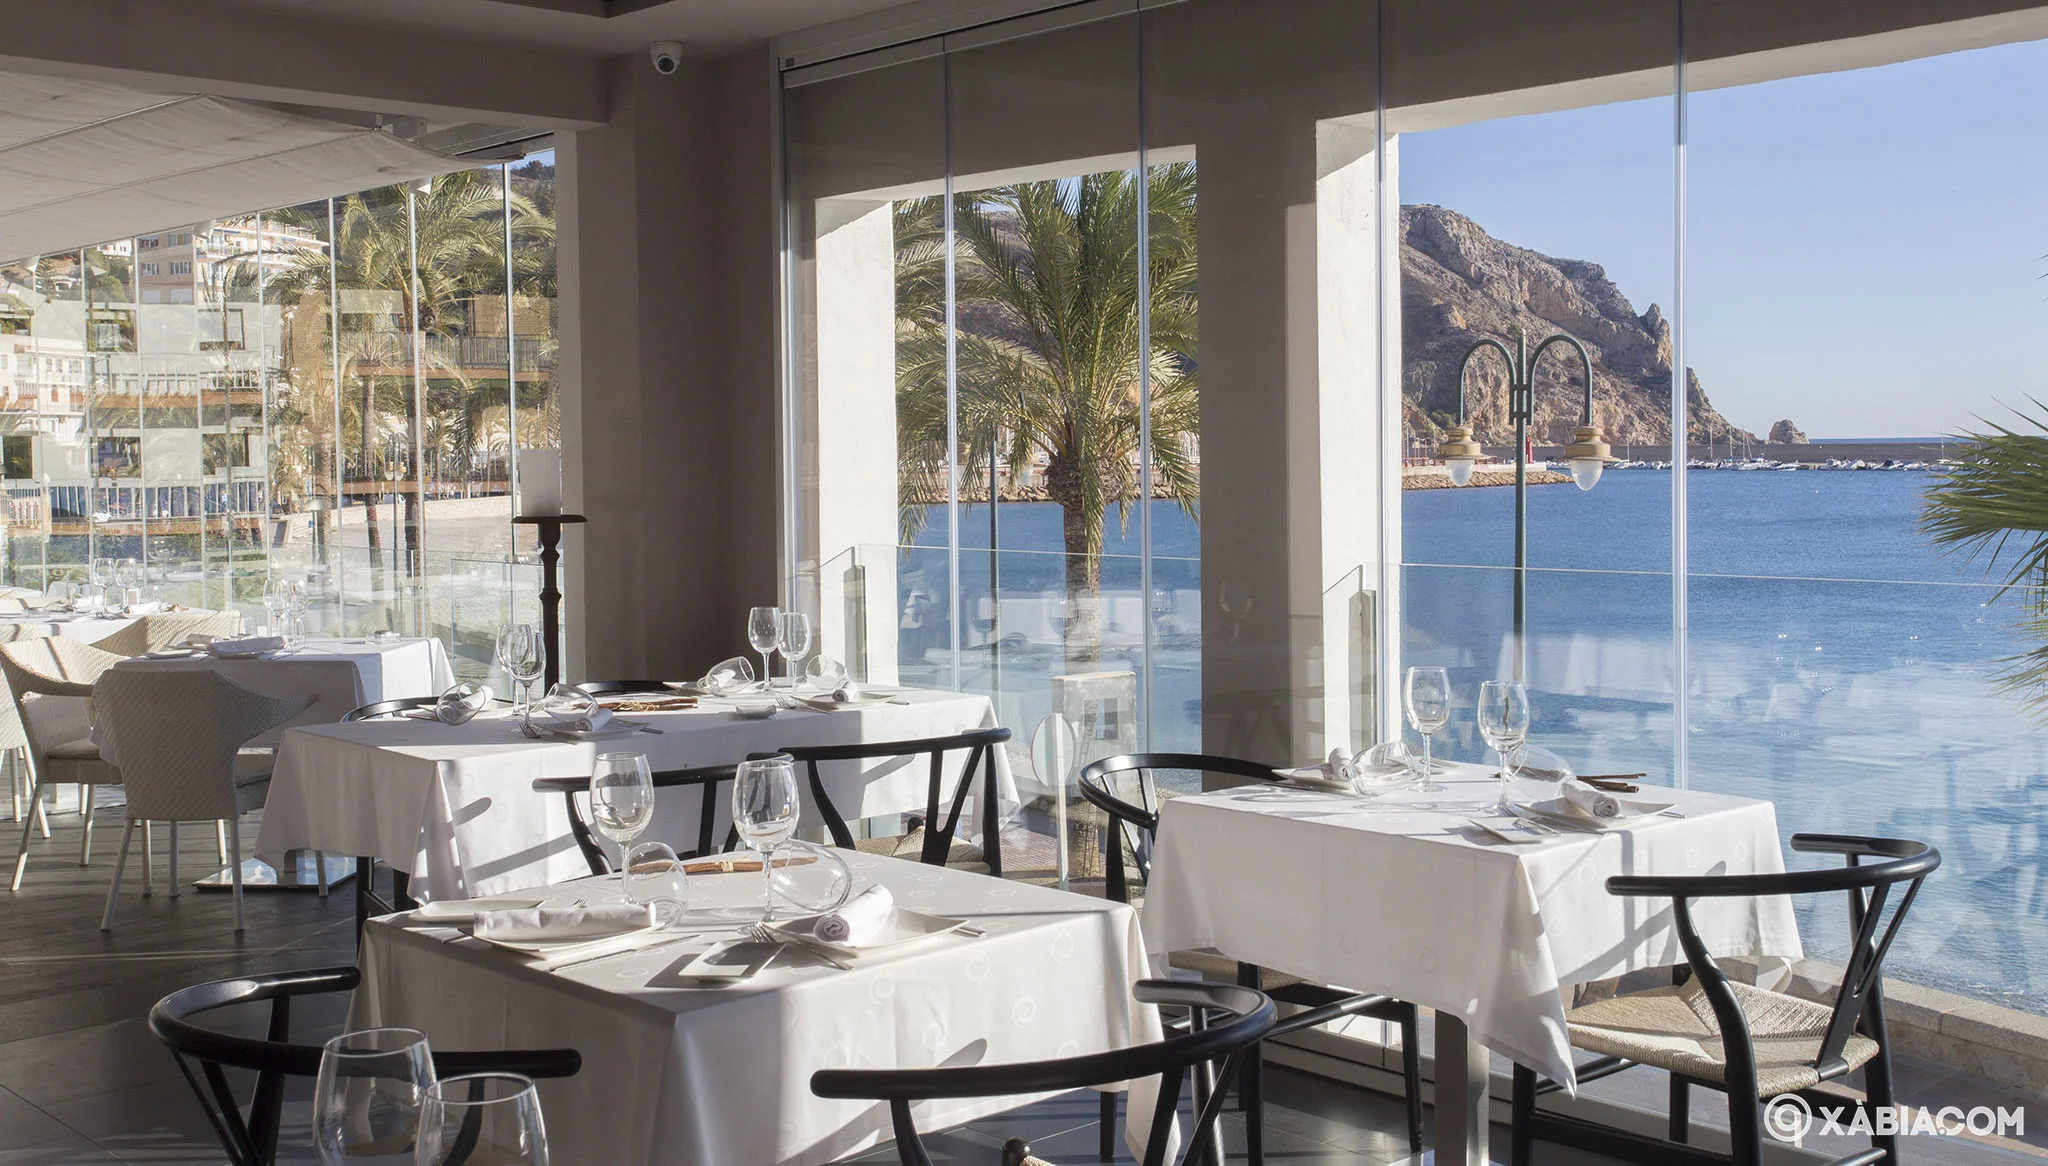 Comedor con vistas al mar – Restaurante Noray